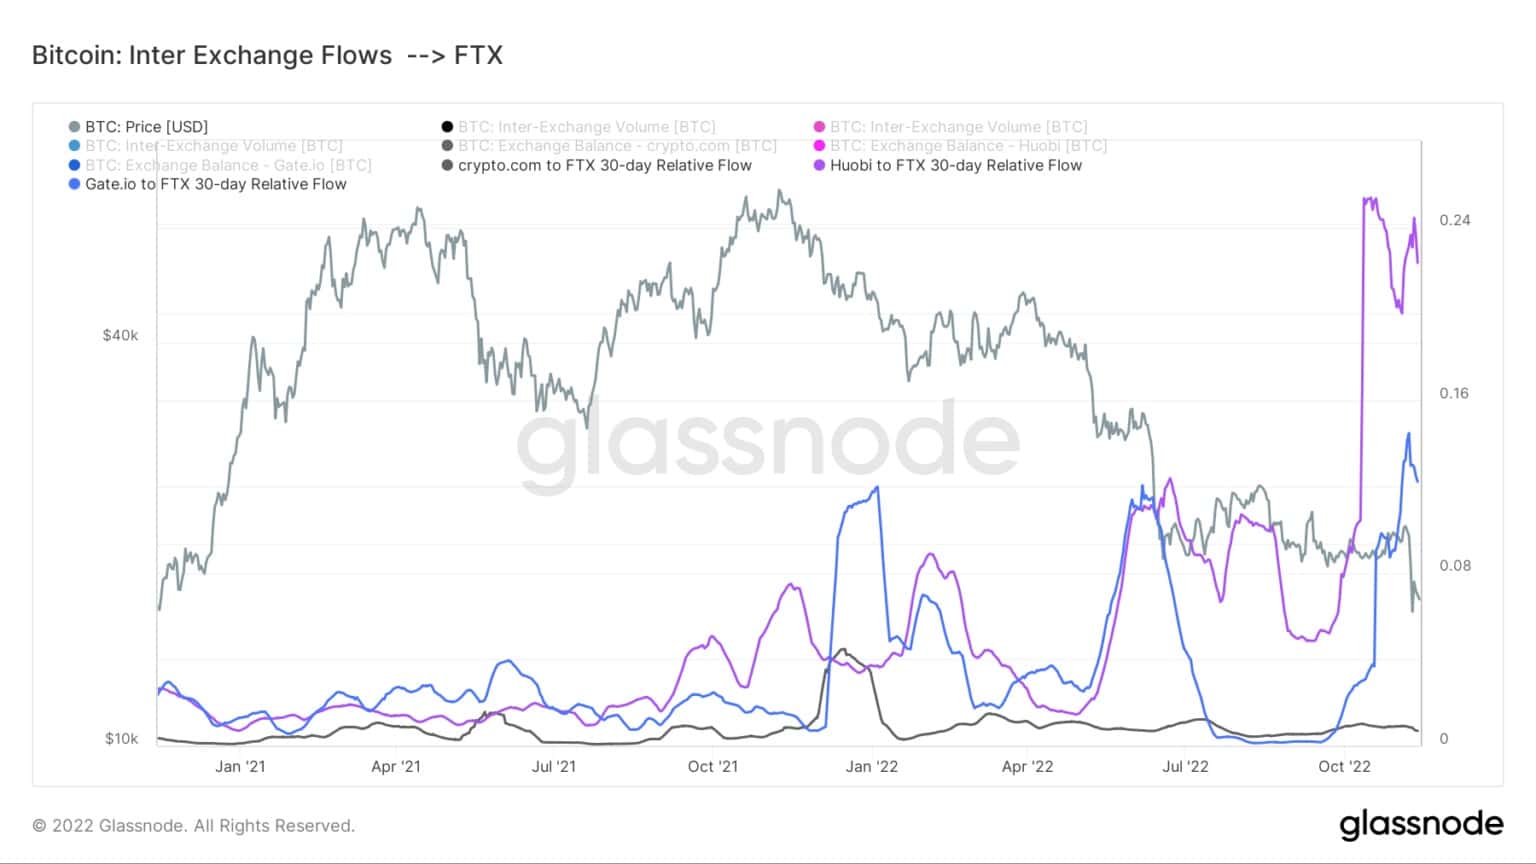 Gráfico que muestra los flujos de Bitcoin entre intercambios de Gate.io, Crypto.com y Huobi a FTX (Fuente: Glassnode)